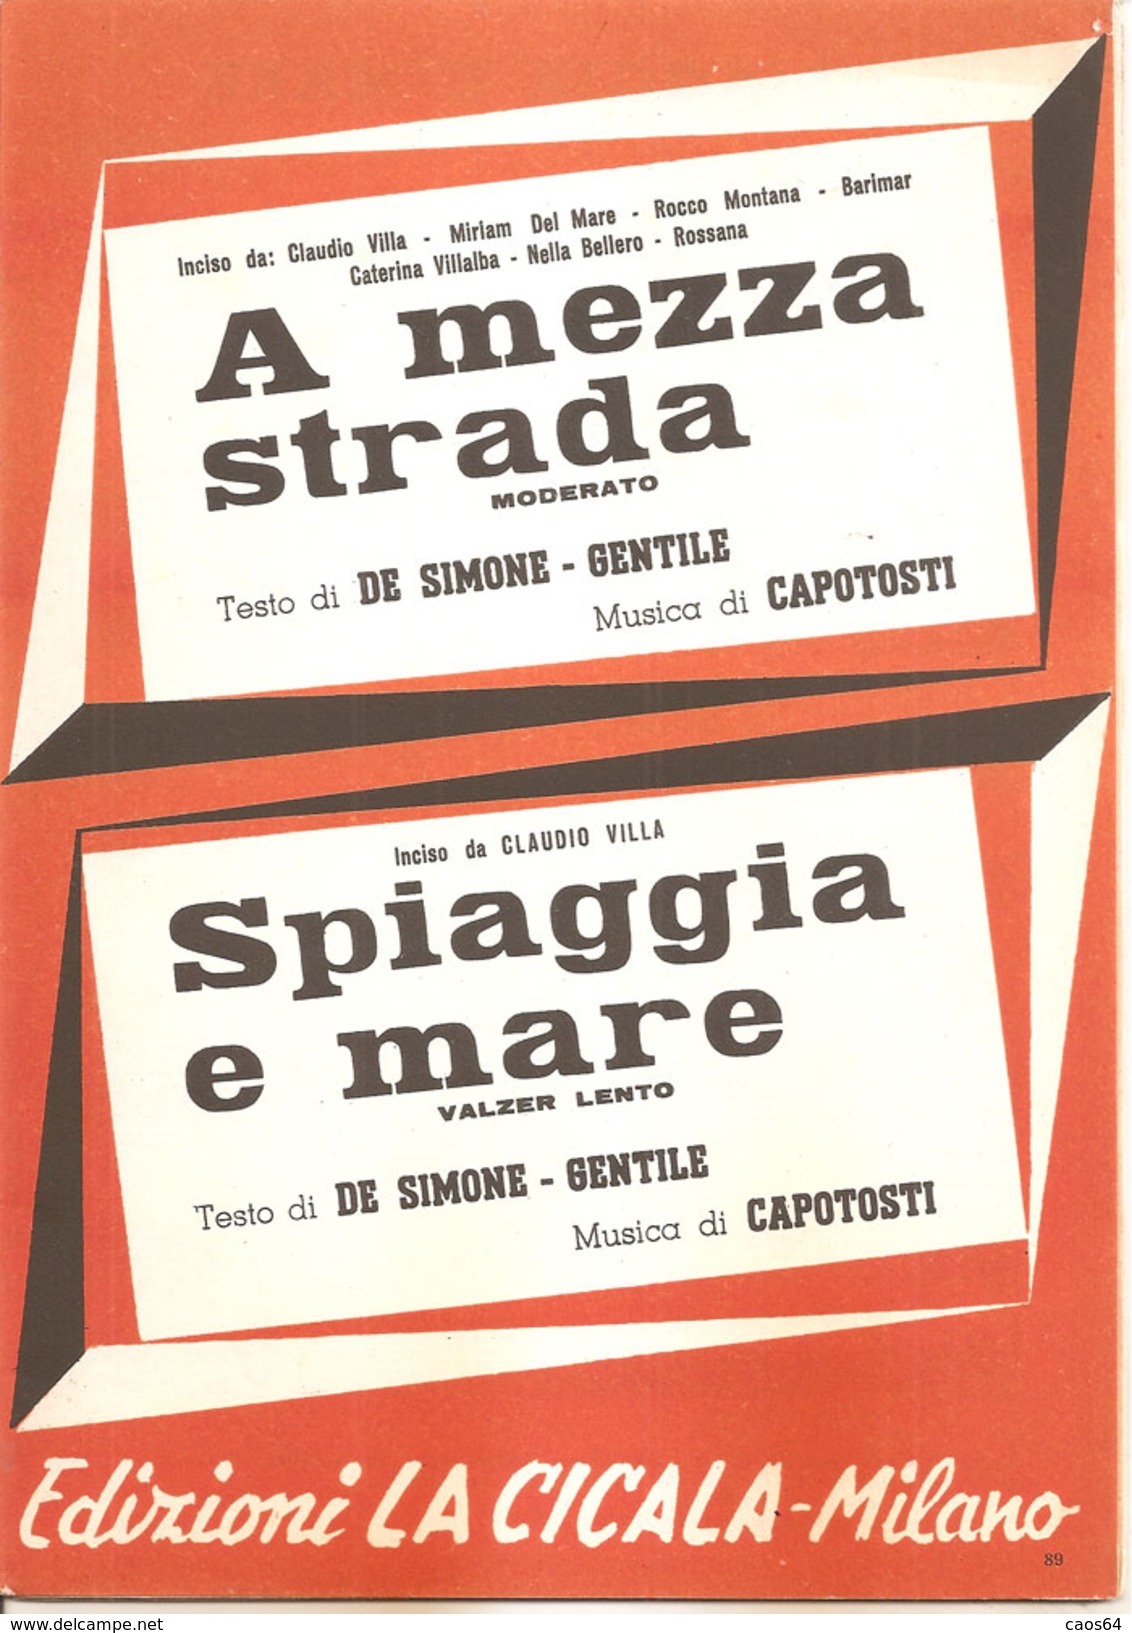 A MEZZA STRADA - SPIAGGIA E MARE DE SIMONE GENTILE CAPOTOSTI - Scholingsboek